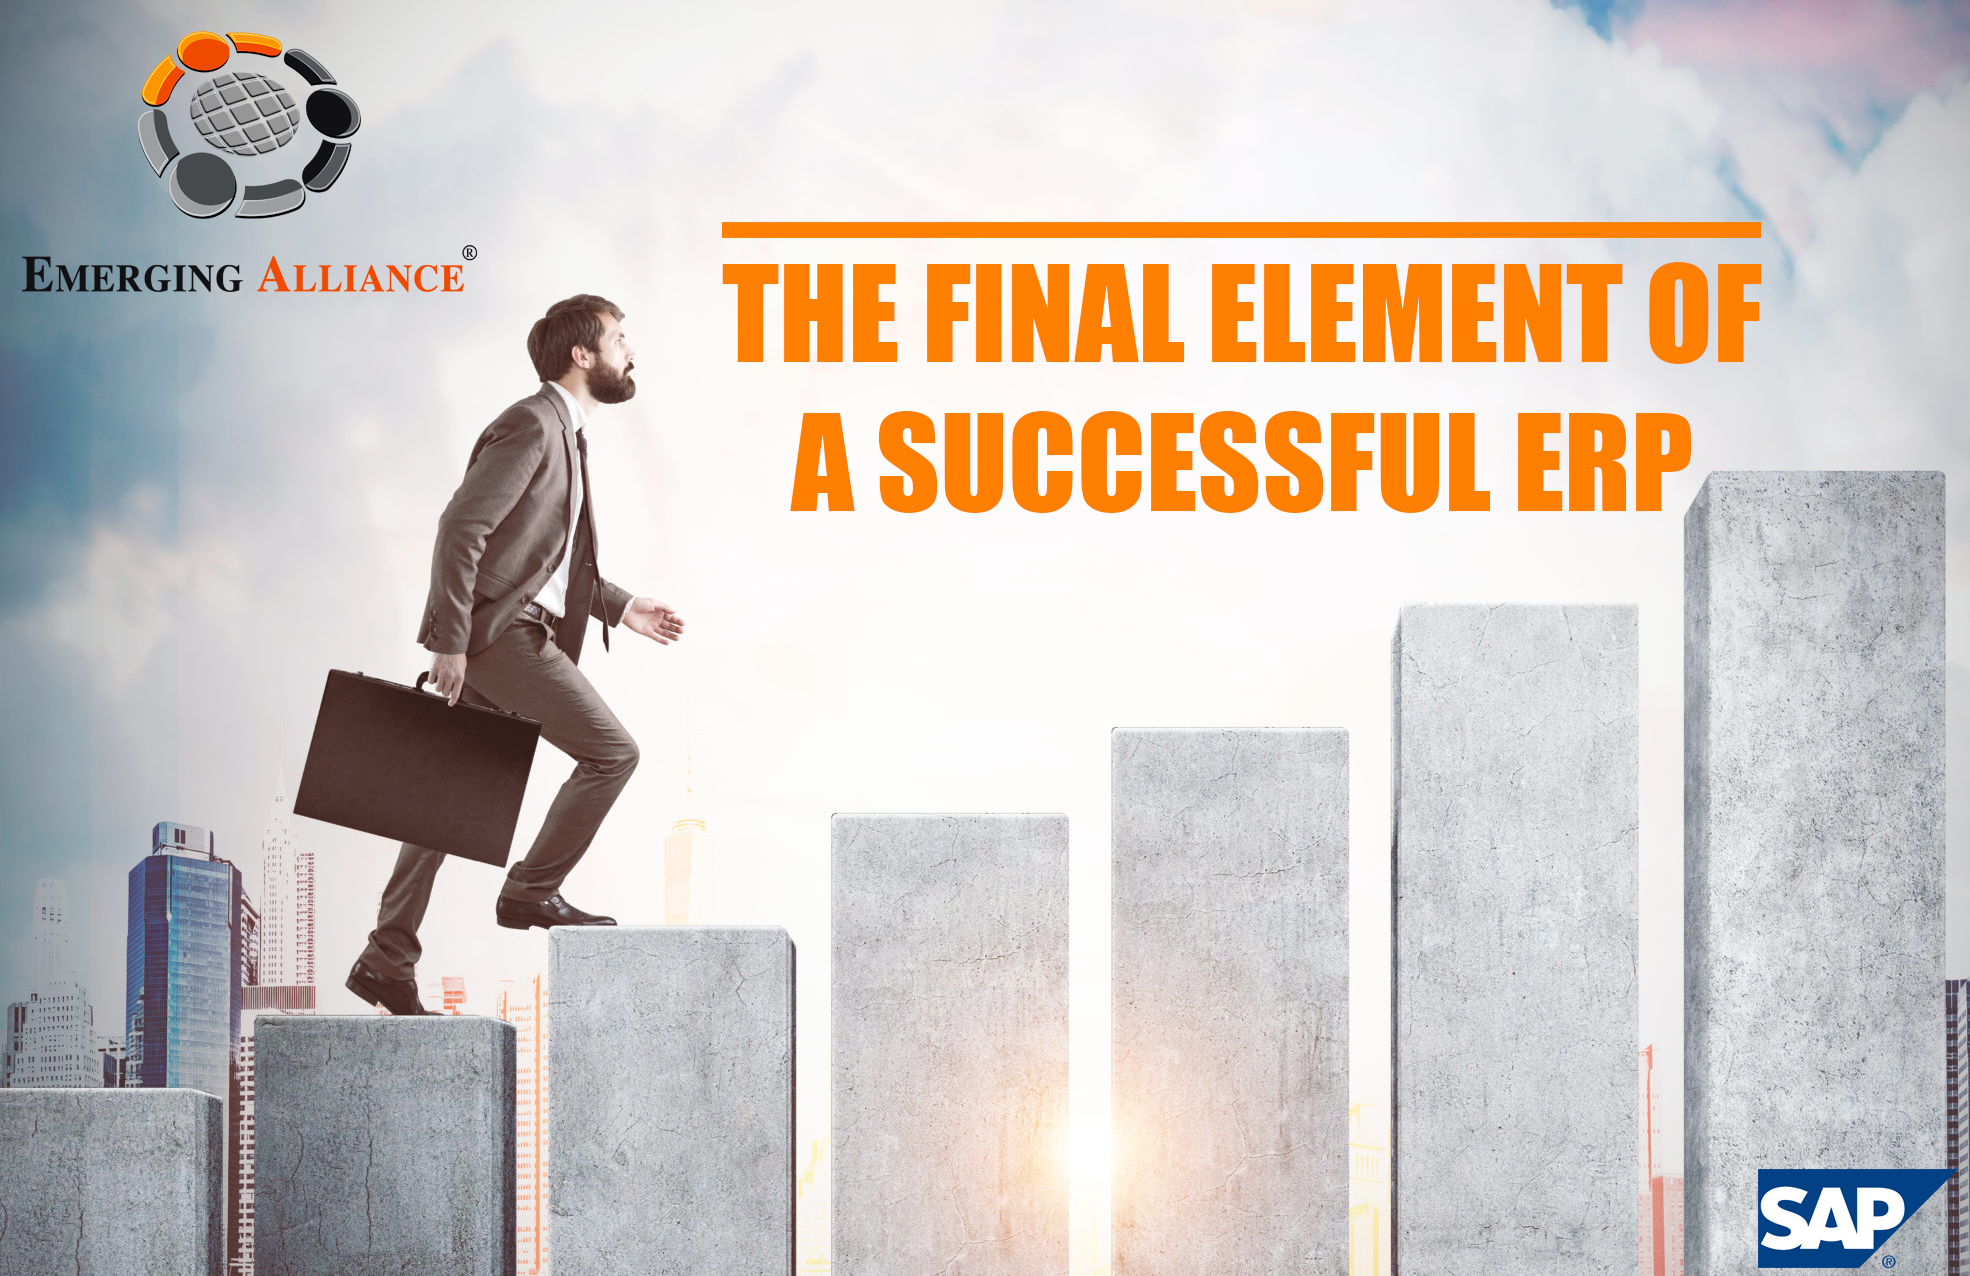 The final element a successful ERP